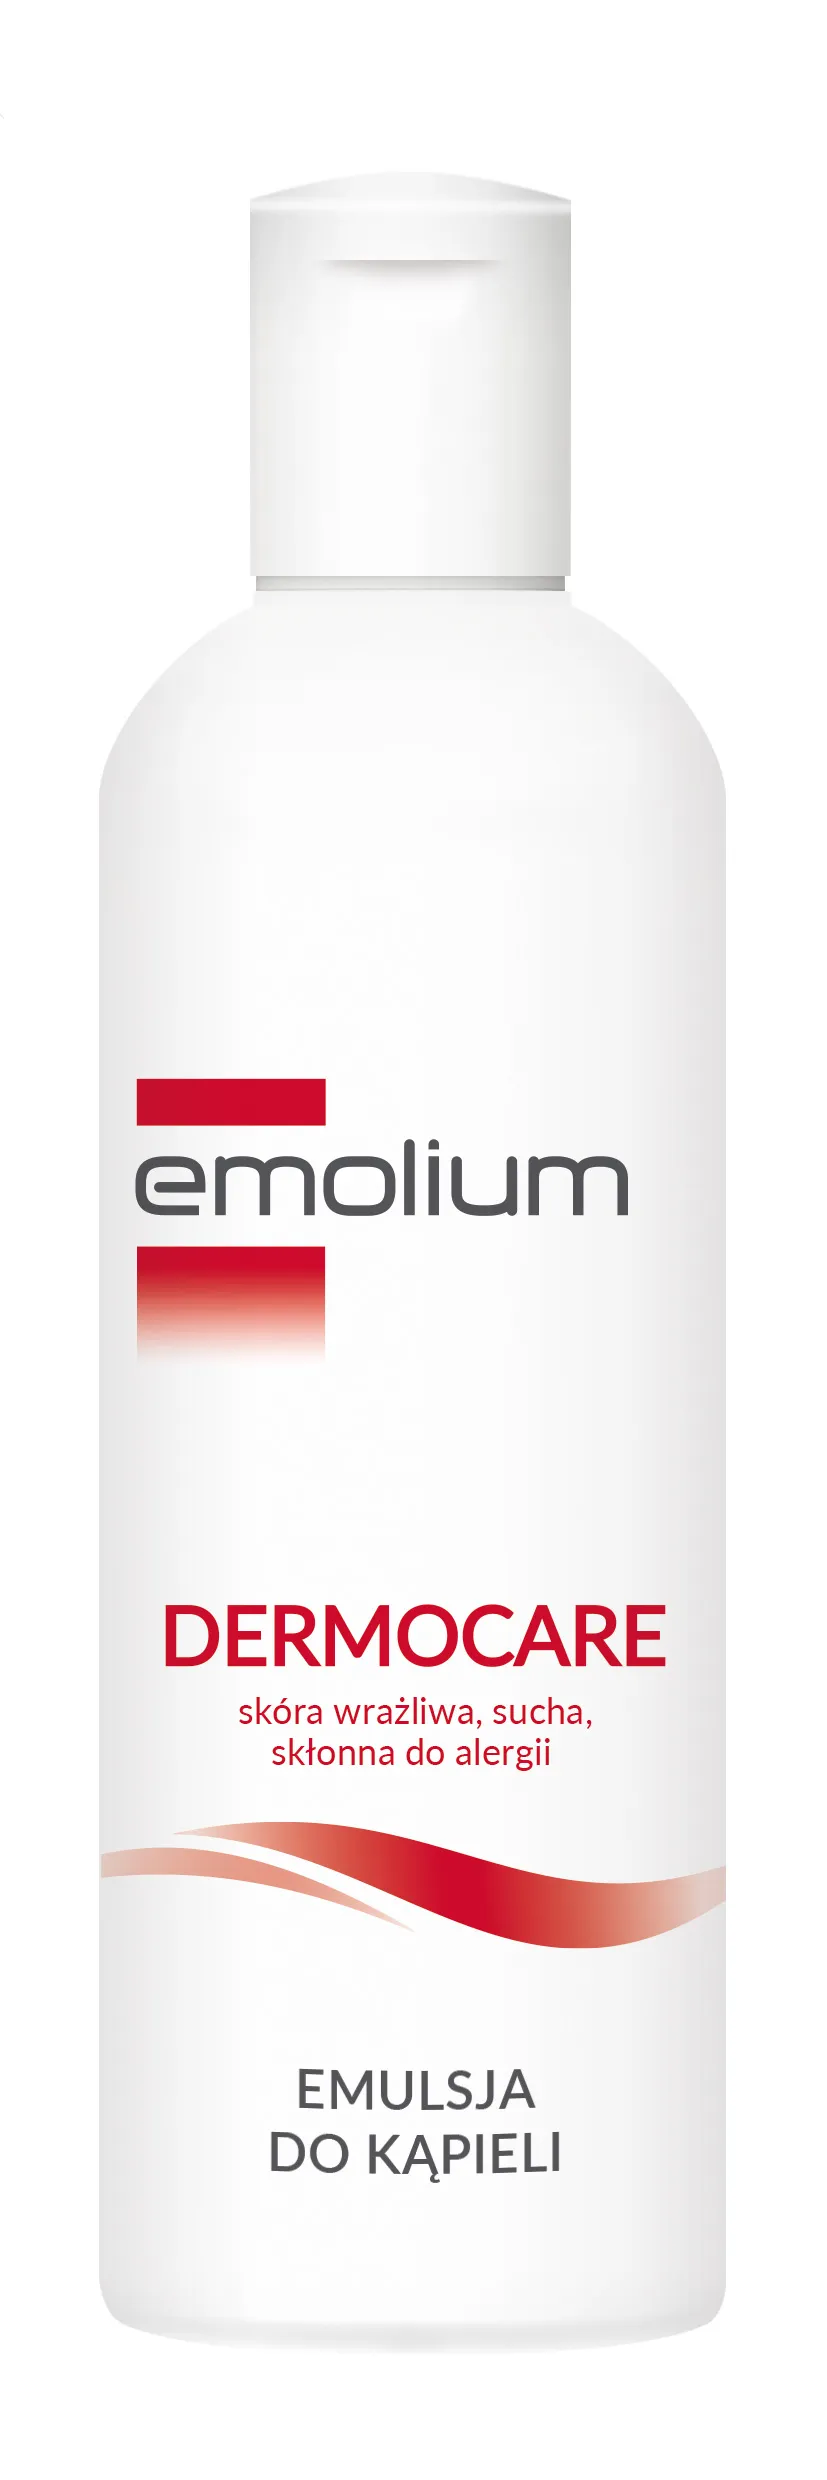 Emolium Dermocare, emulsja do kapieli, 200 ml 